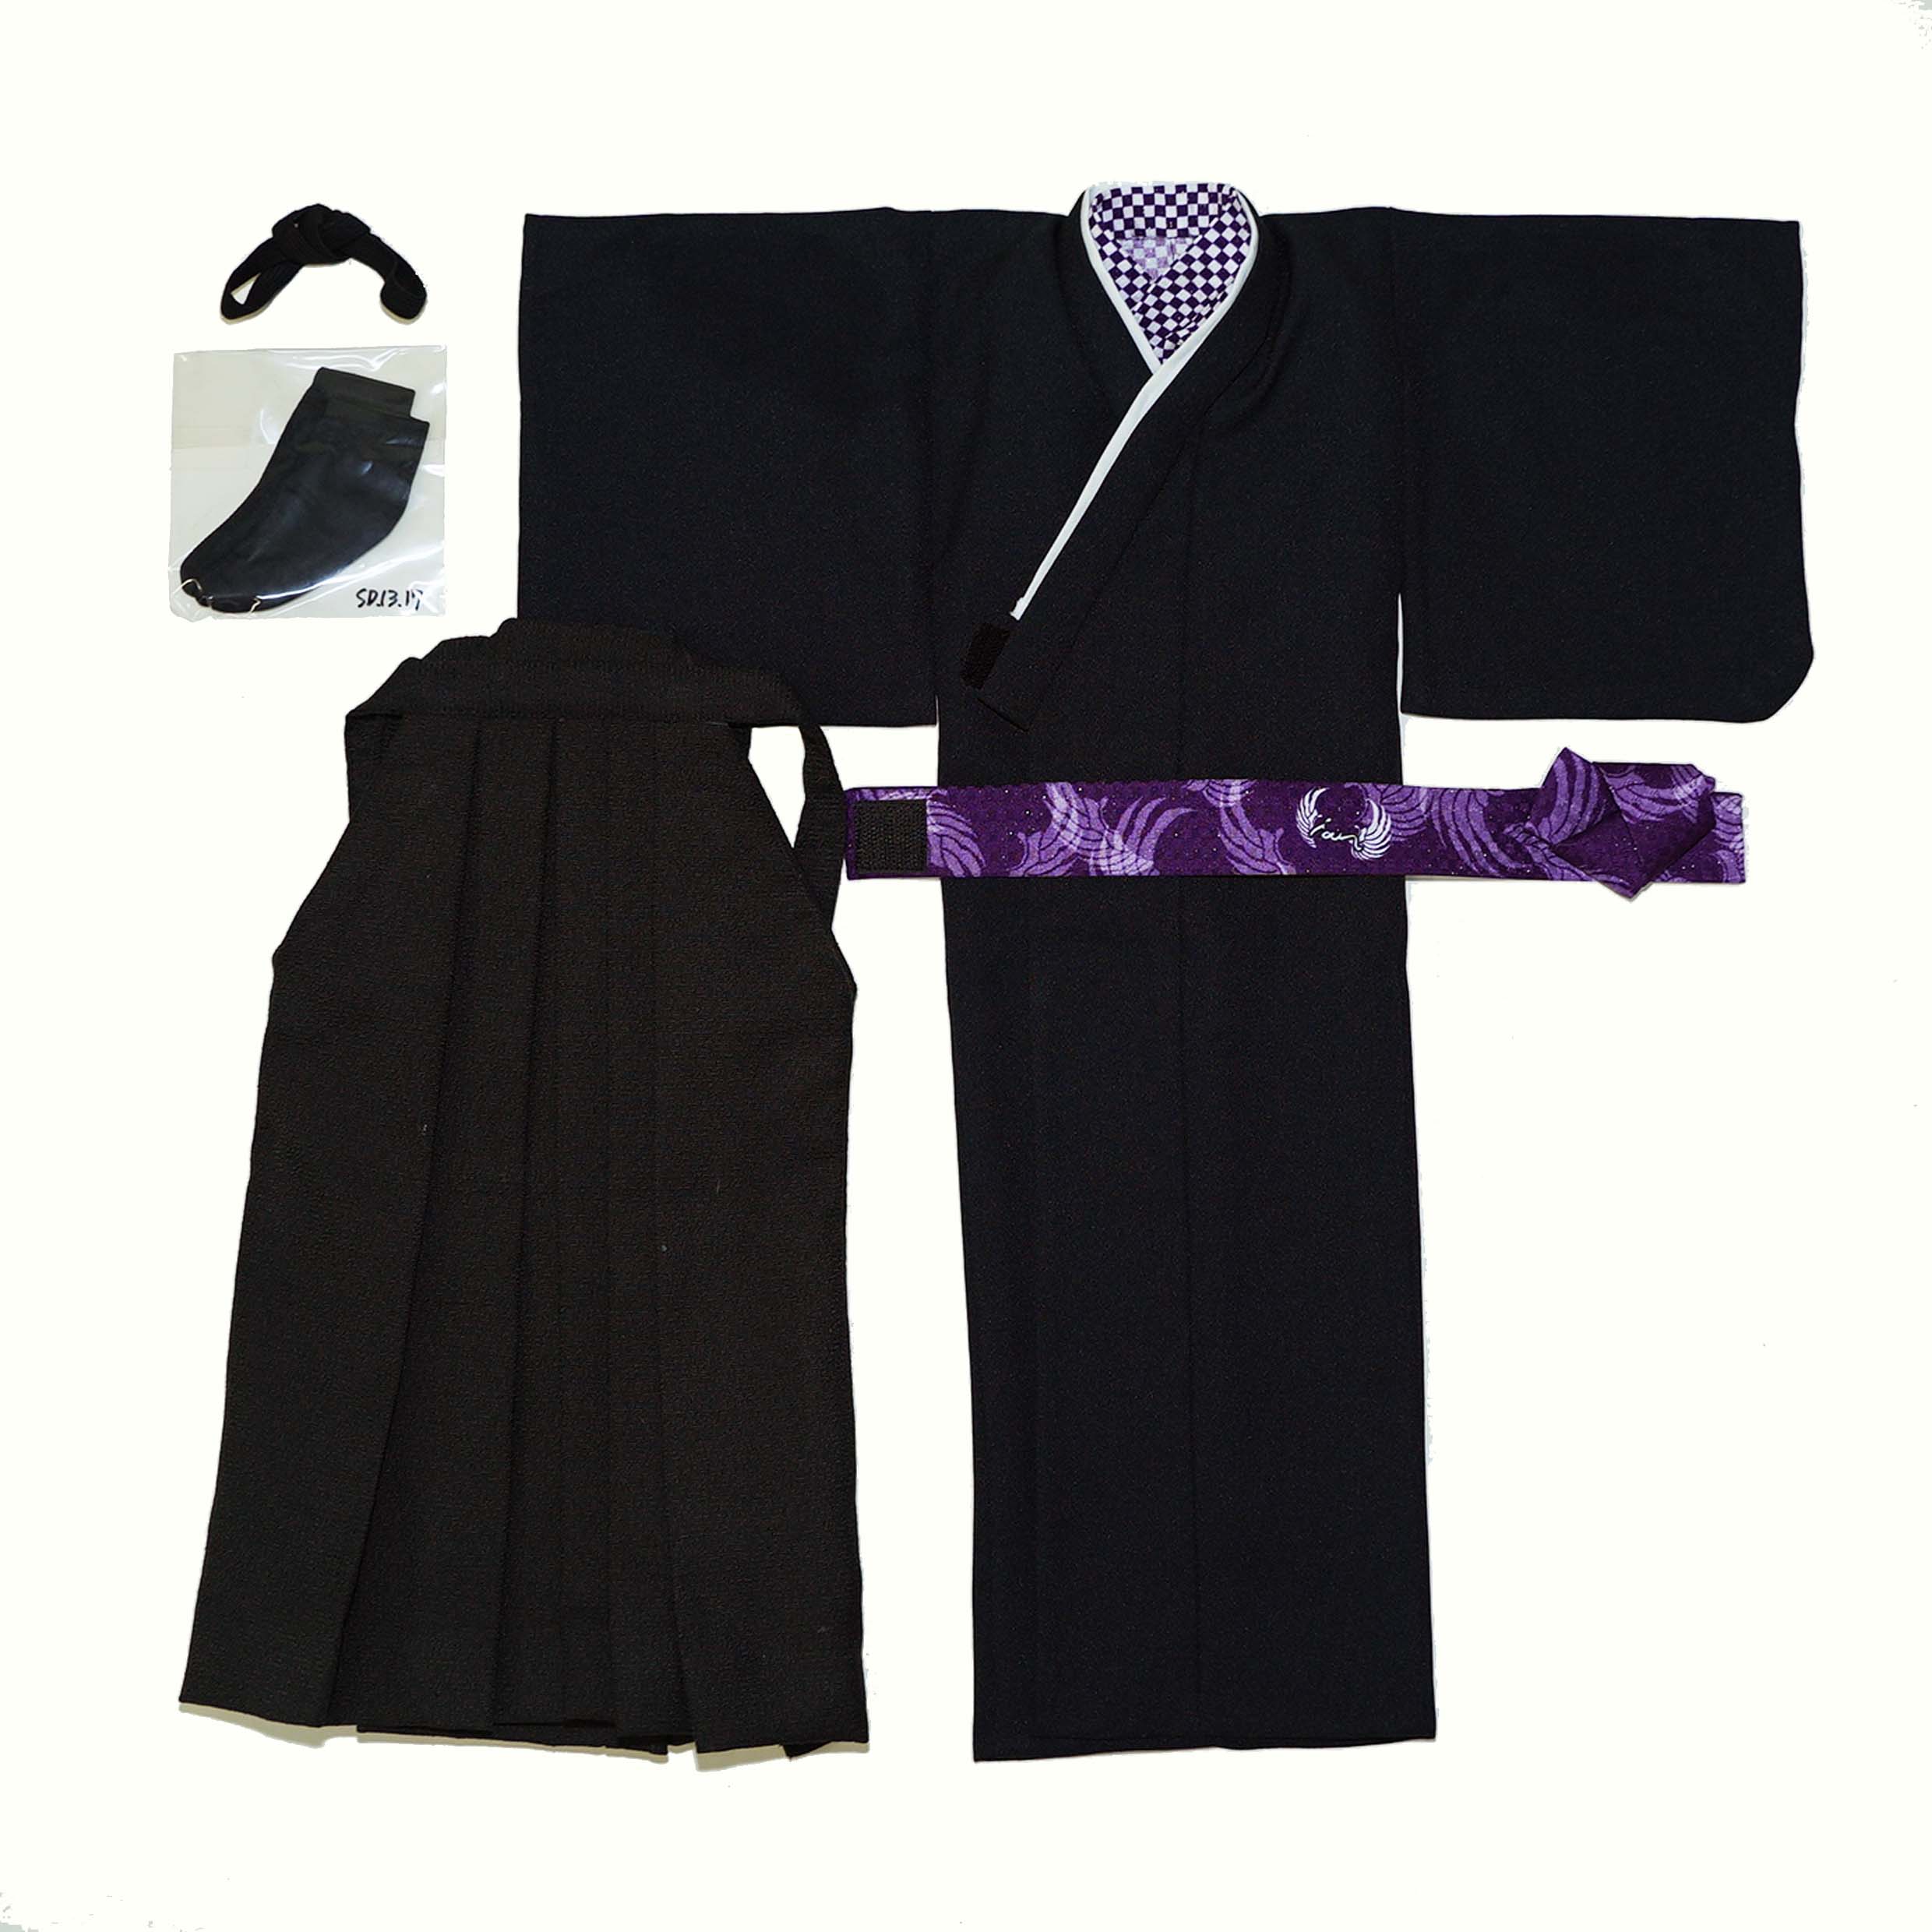 納得できる割引 SDドール用着物 羽織 袴 衣桁 専用 クラフト/布製品